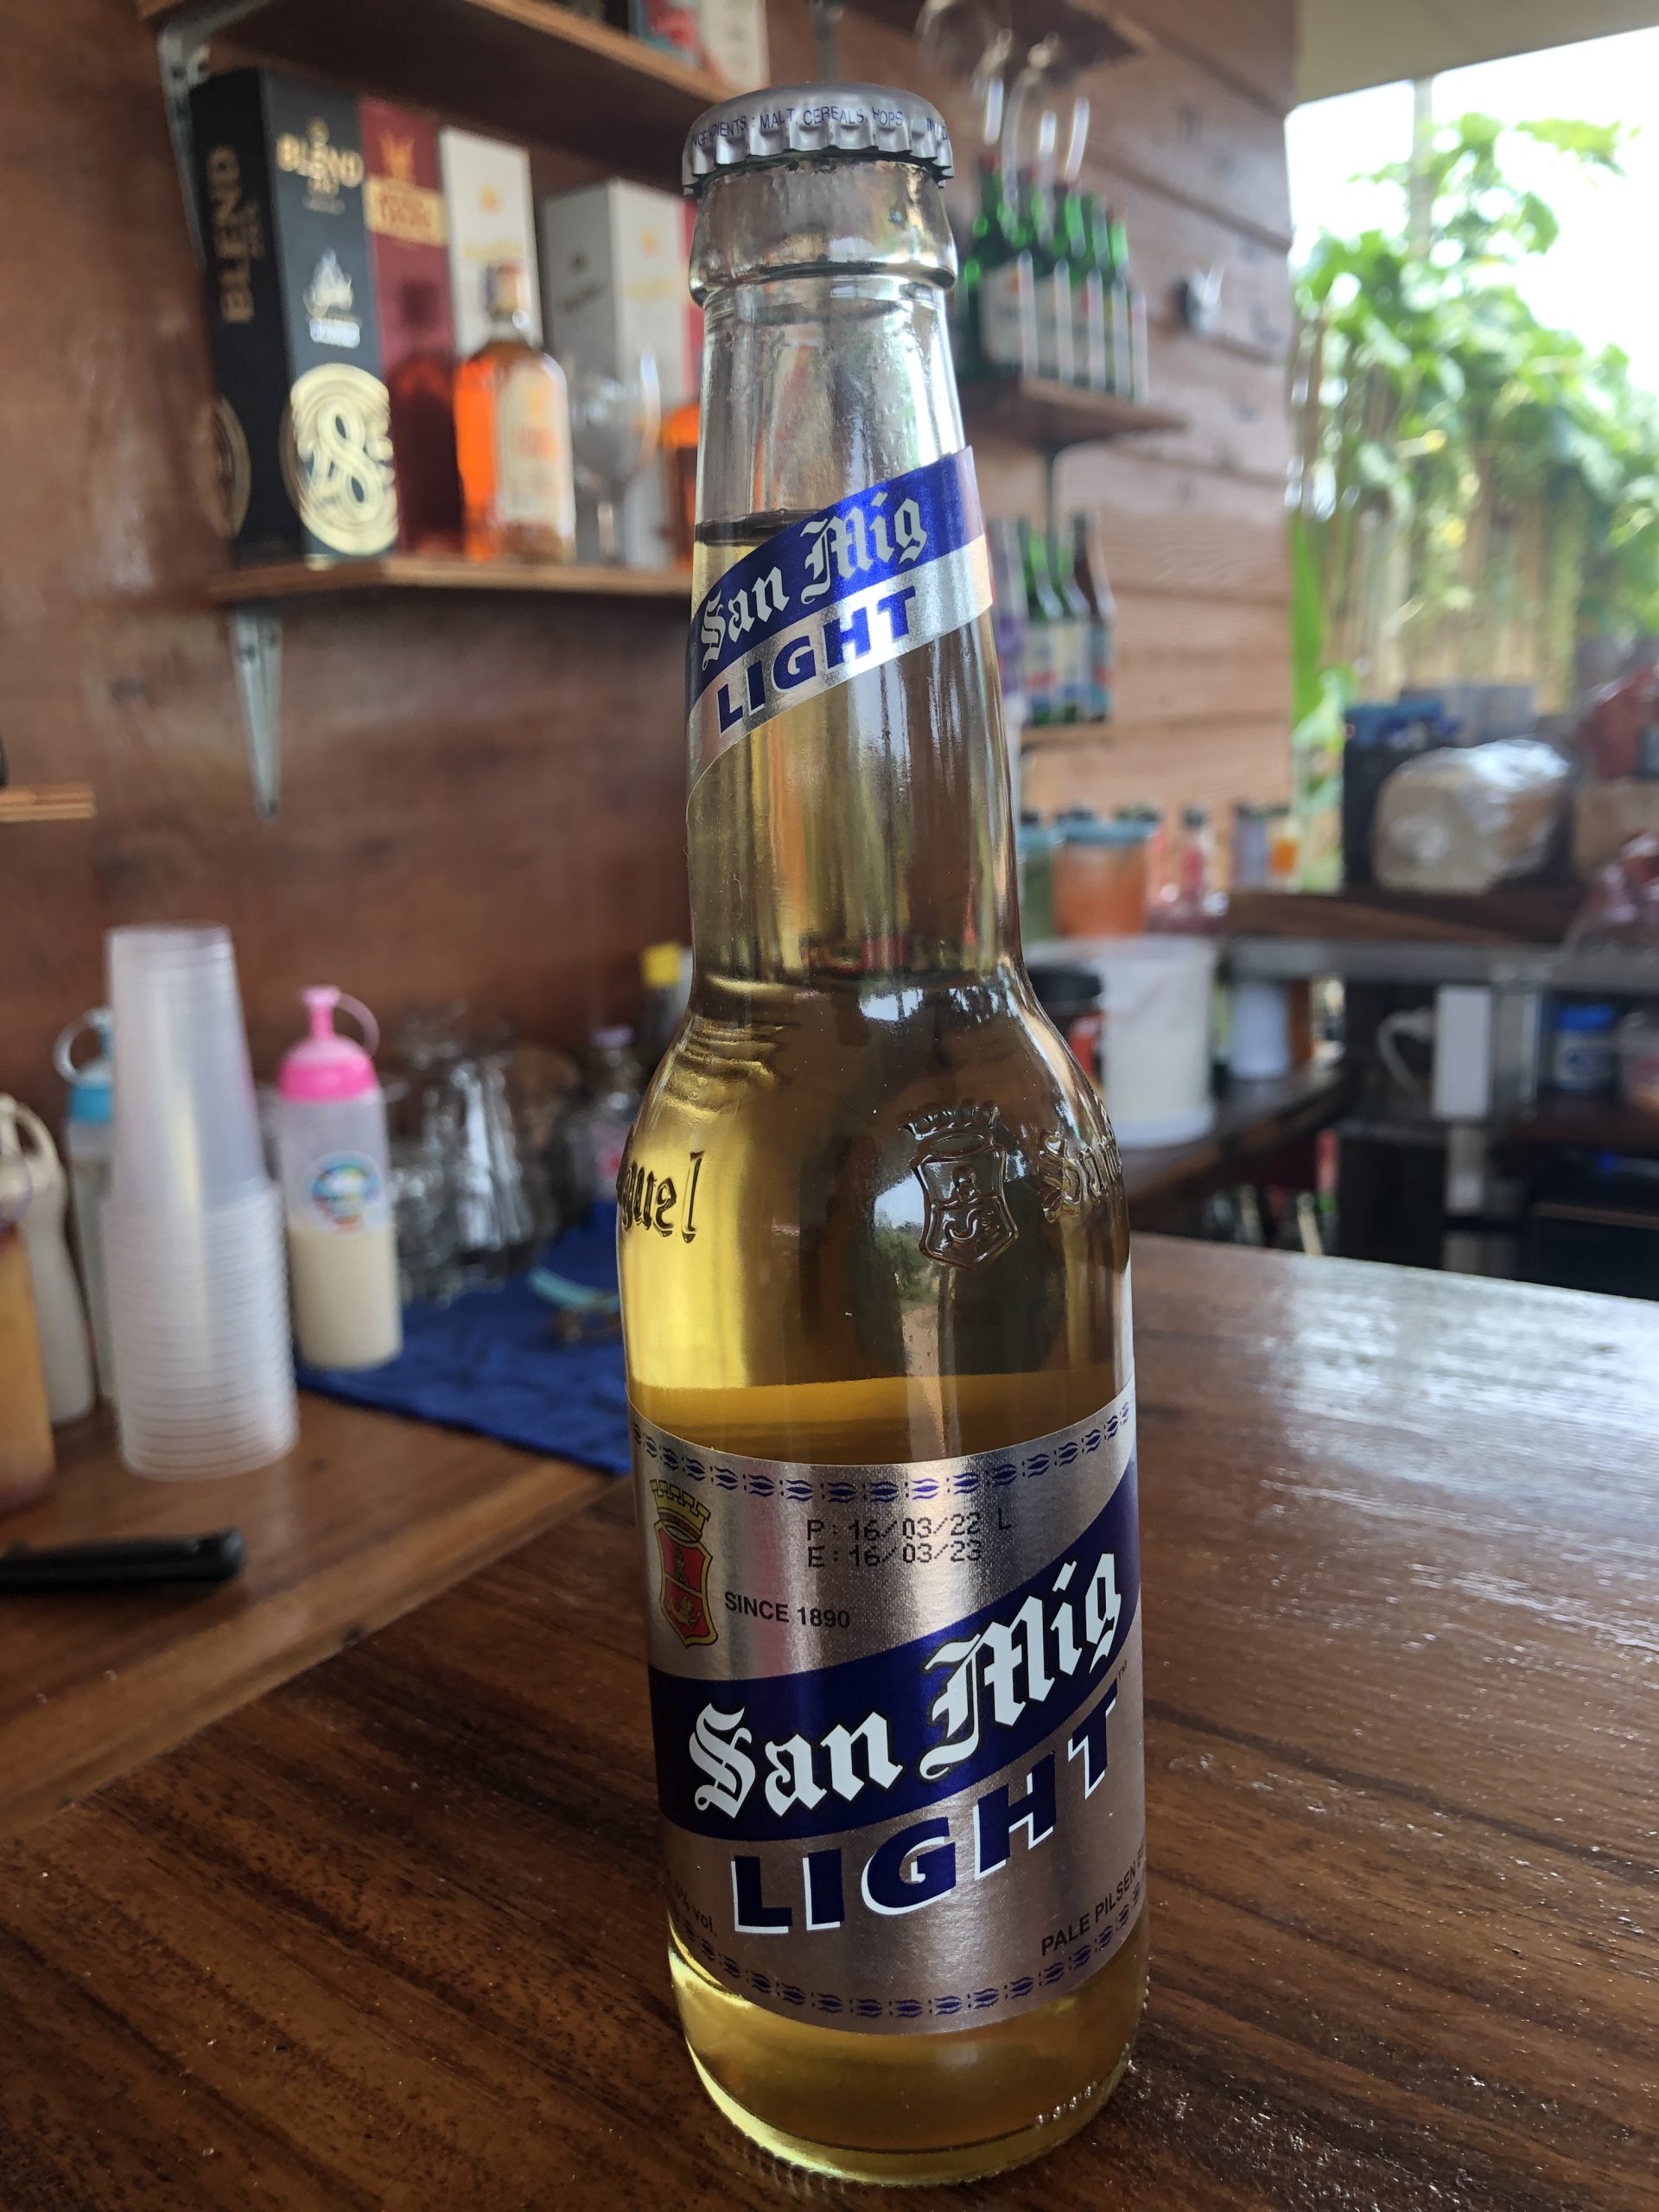 San Miguel Beer / ซาน มิเกล เบียร์ / 55 บาท